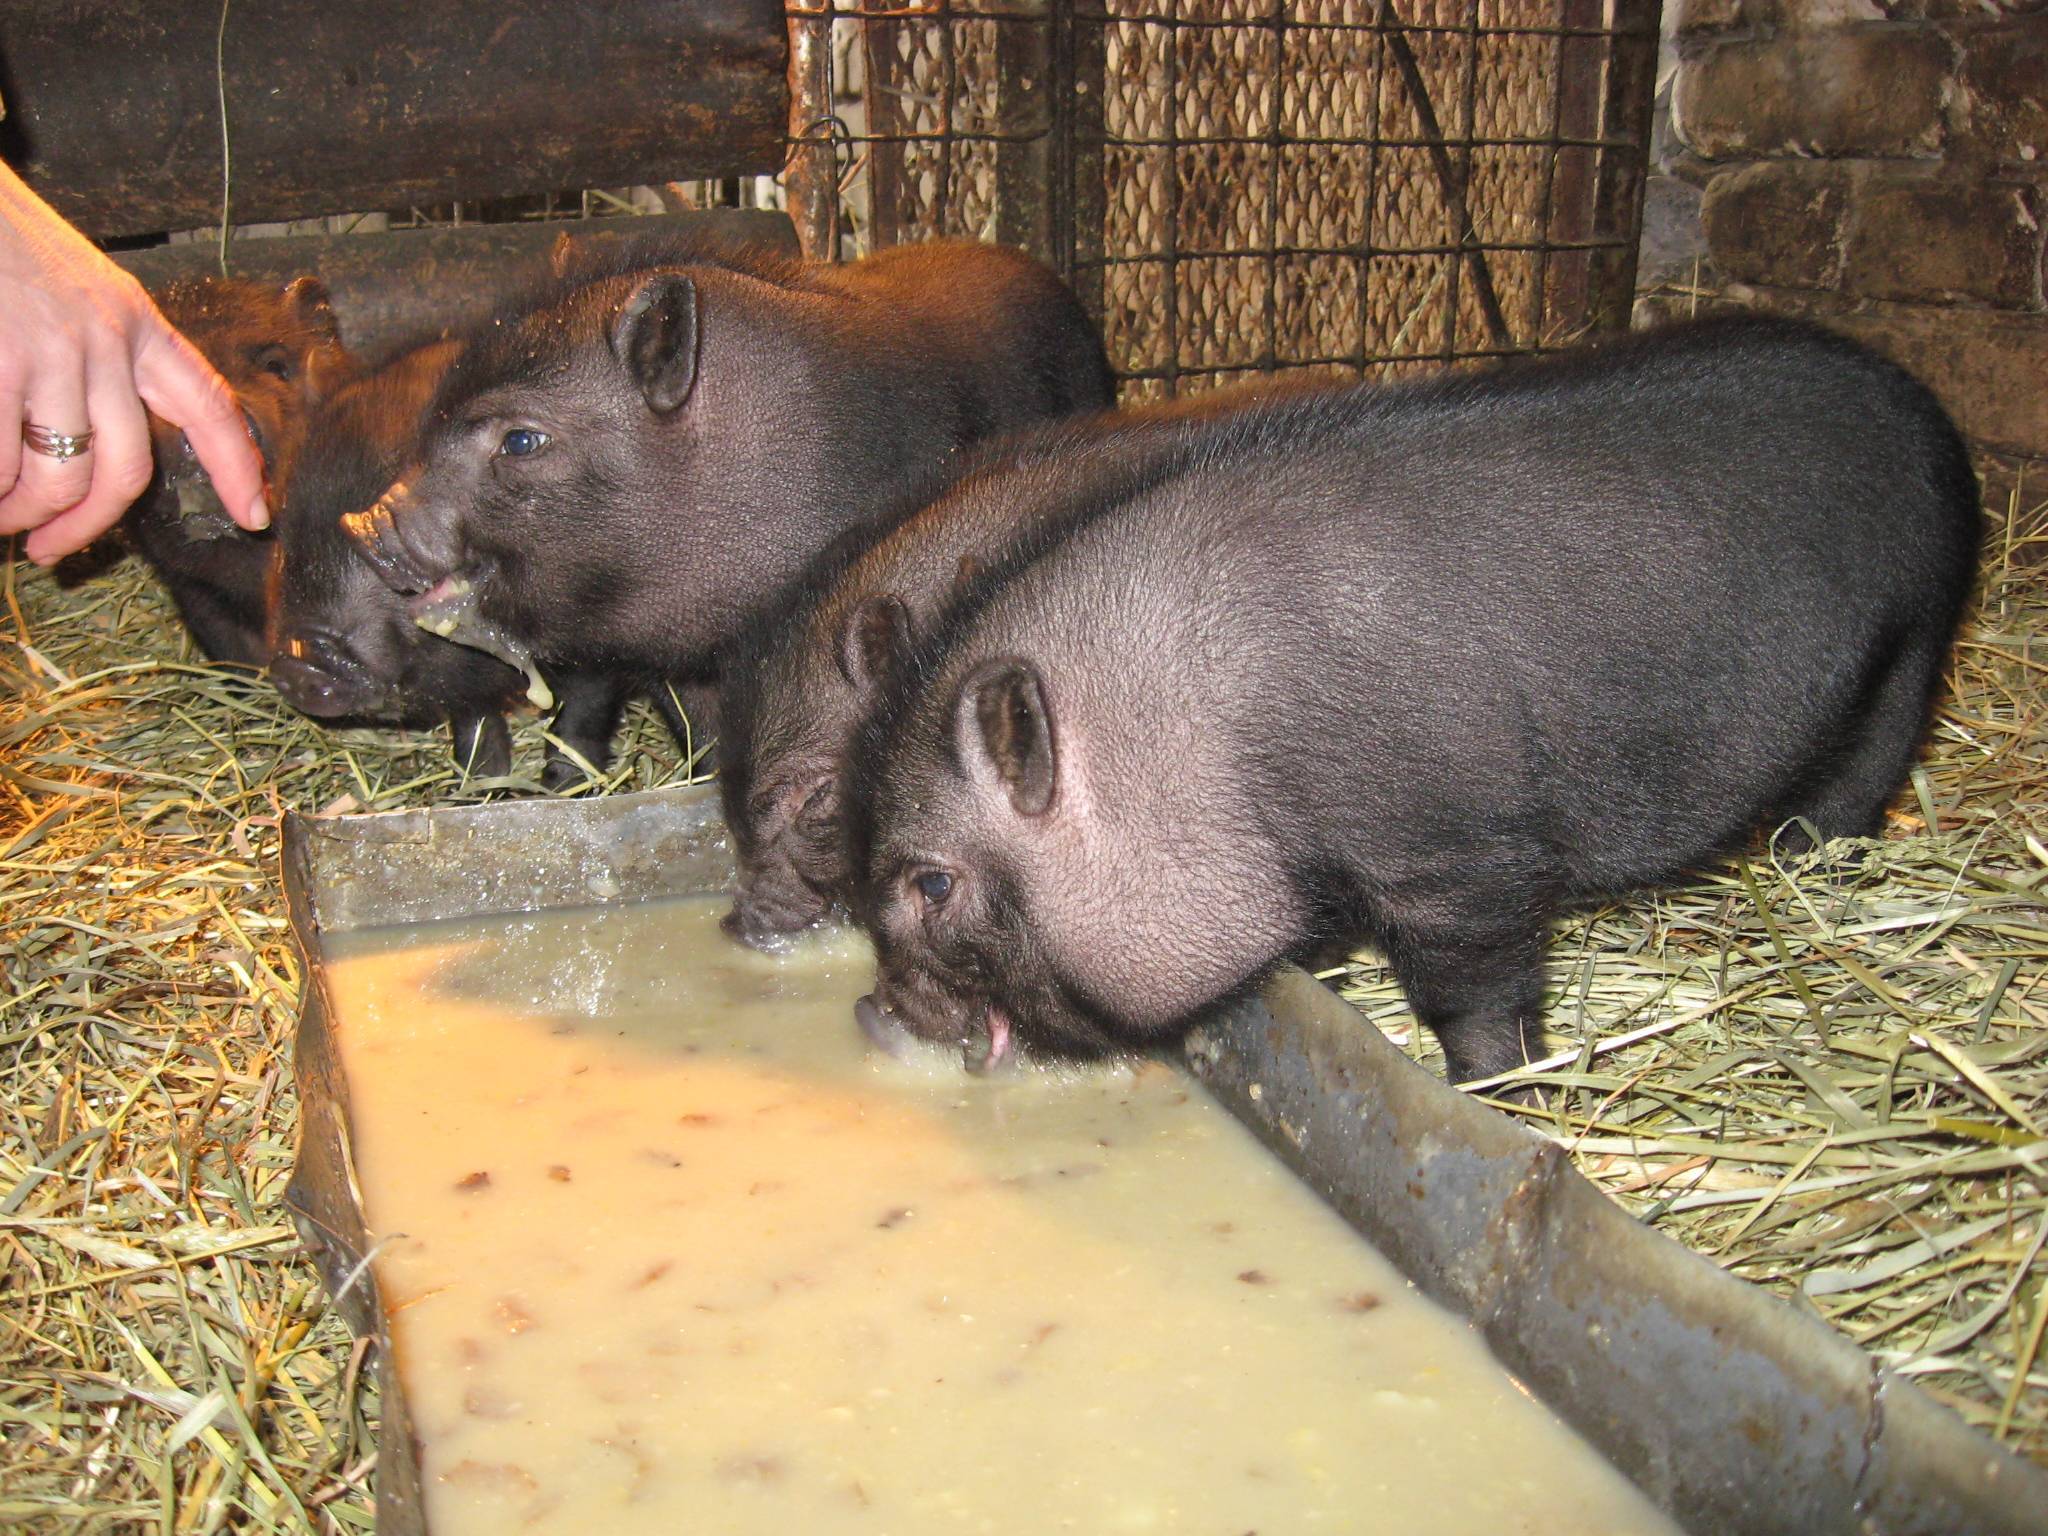 Вьетнамские вислобрюхие свиньи и поросята: выращивание, содержание и описание